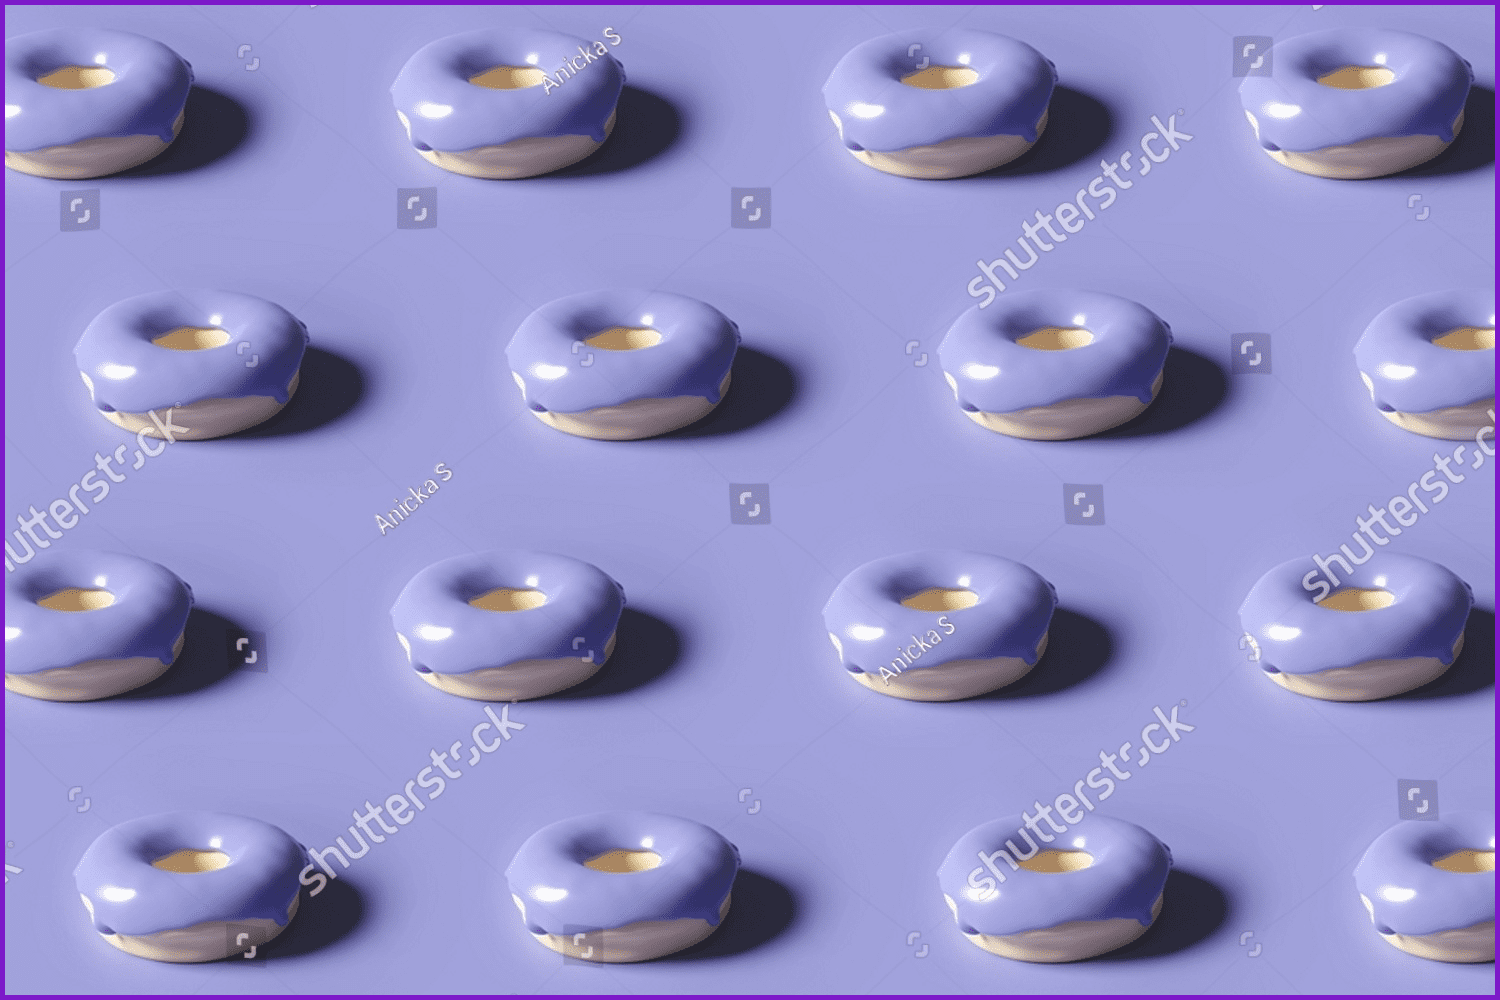 3d render of donut pattern glazed with violet color.